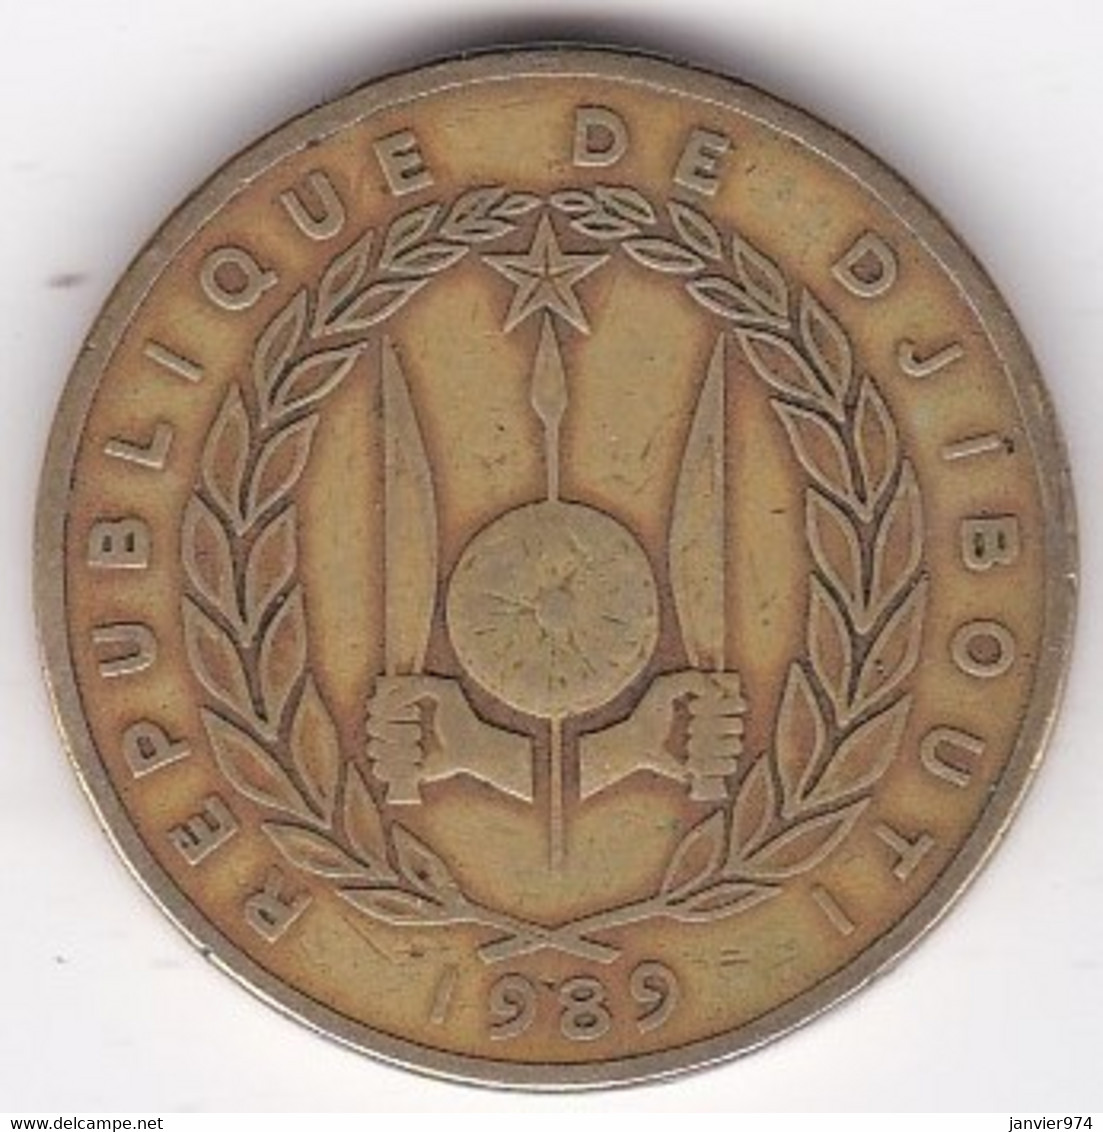 République De Djibouti 500 Francs 1989, Bronze-aluminium, KM# 27 - Djibouti